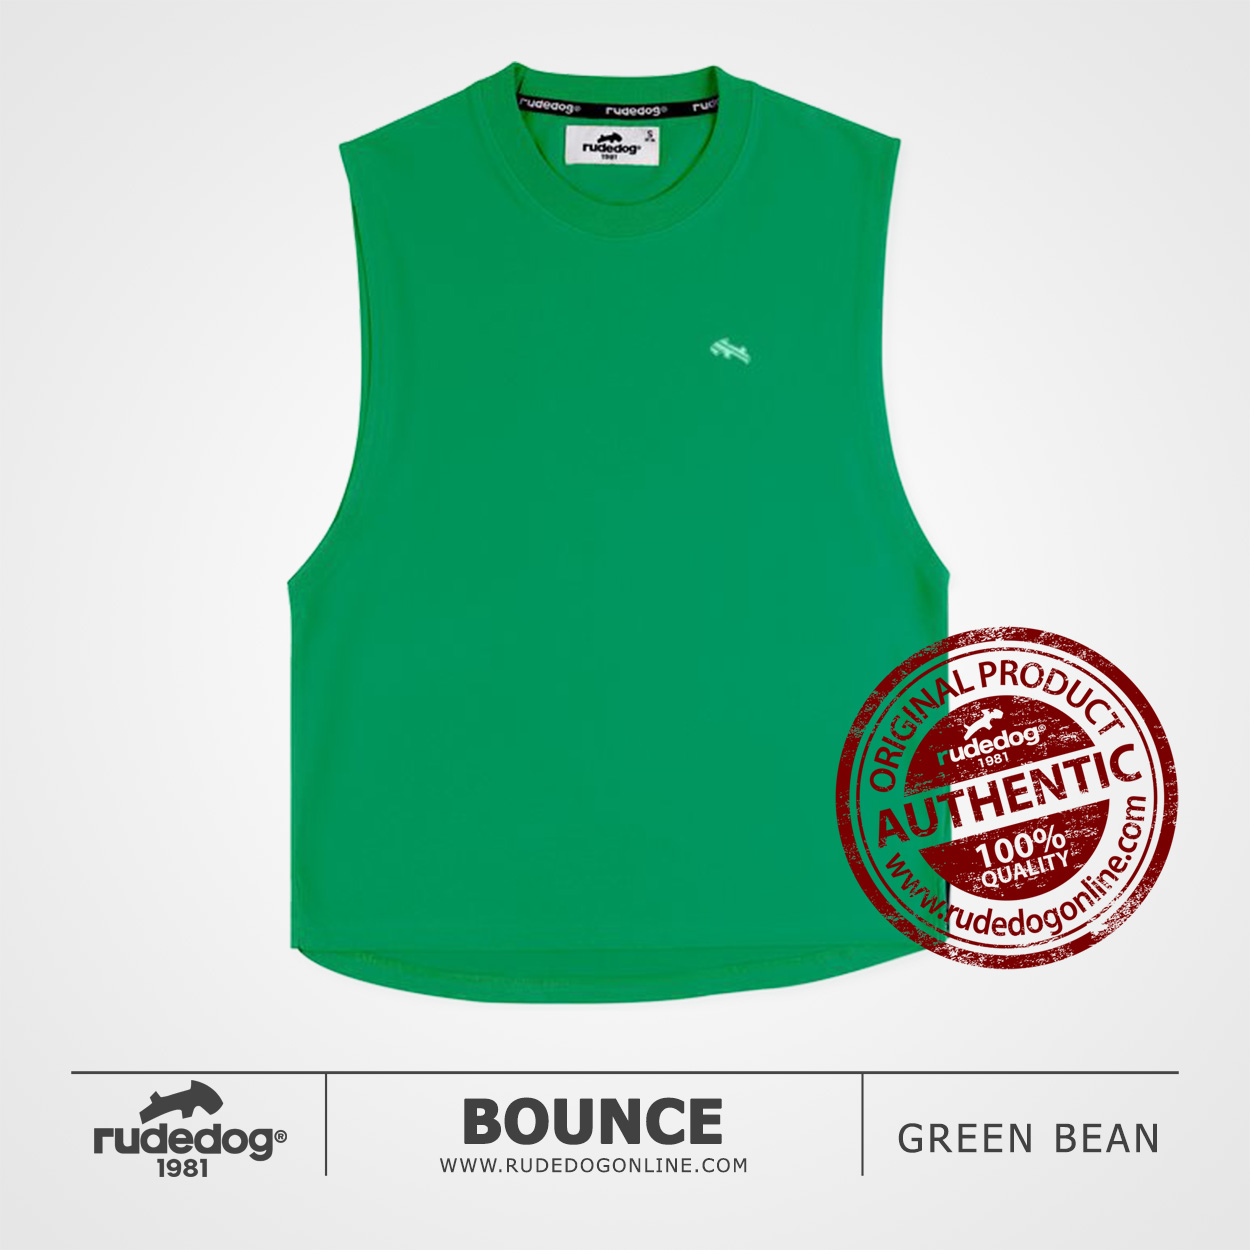 เสื้อยืดแขนกุด เว้าลึก rudedog รุ่น Bounce สีเขียวกรีนบีน